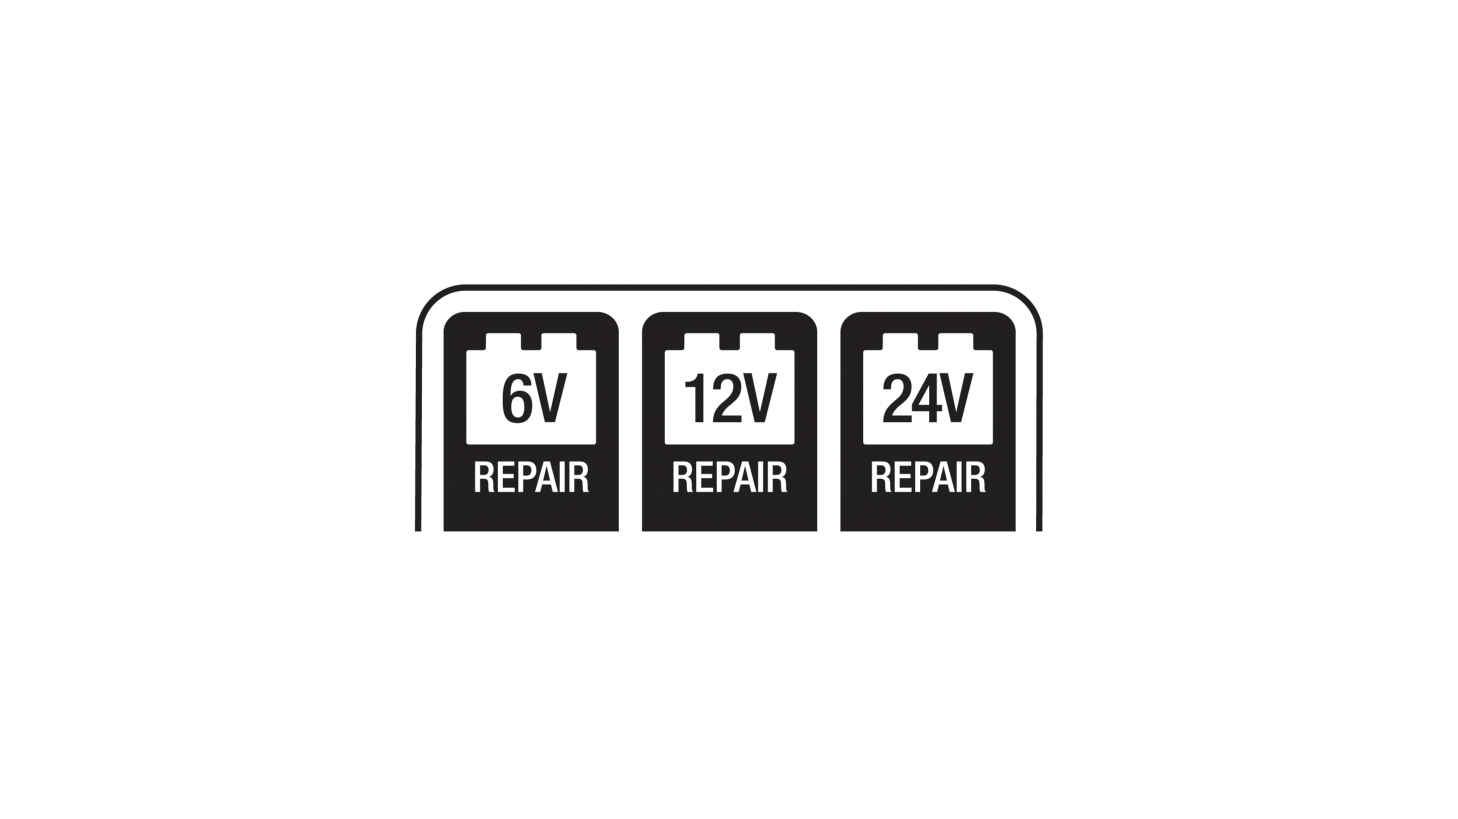  6V / 12V / 24V Repair Mode LED